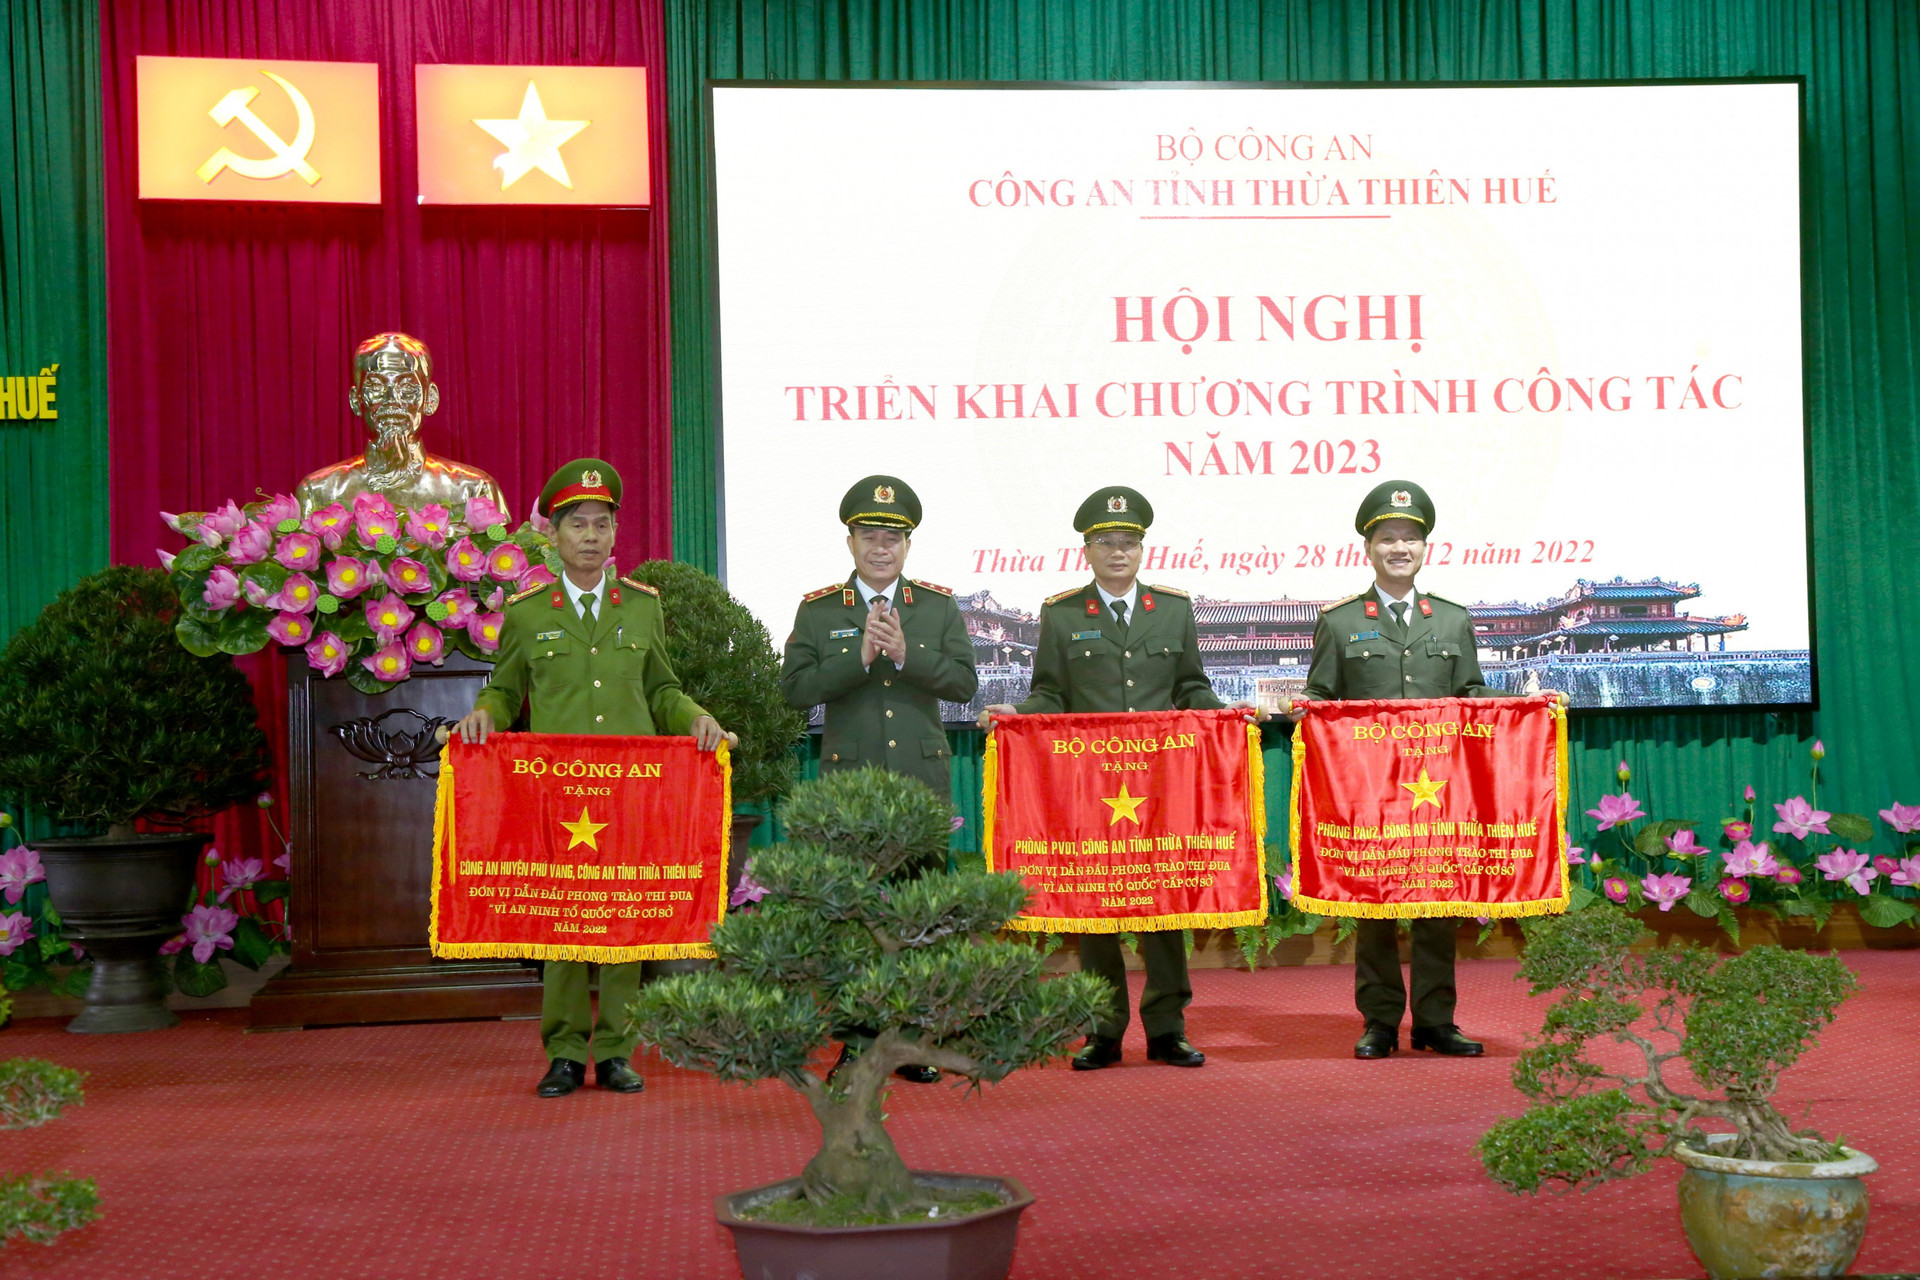 Công an tỉnh Thừa Thiên Huế vinh dự được tặng cờ đơn vị dẫn đầu phong trào thi đua vì An ninh Tổ quốc